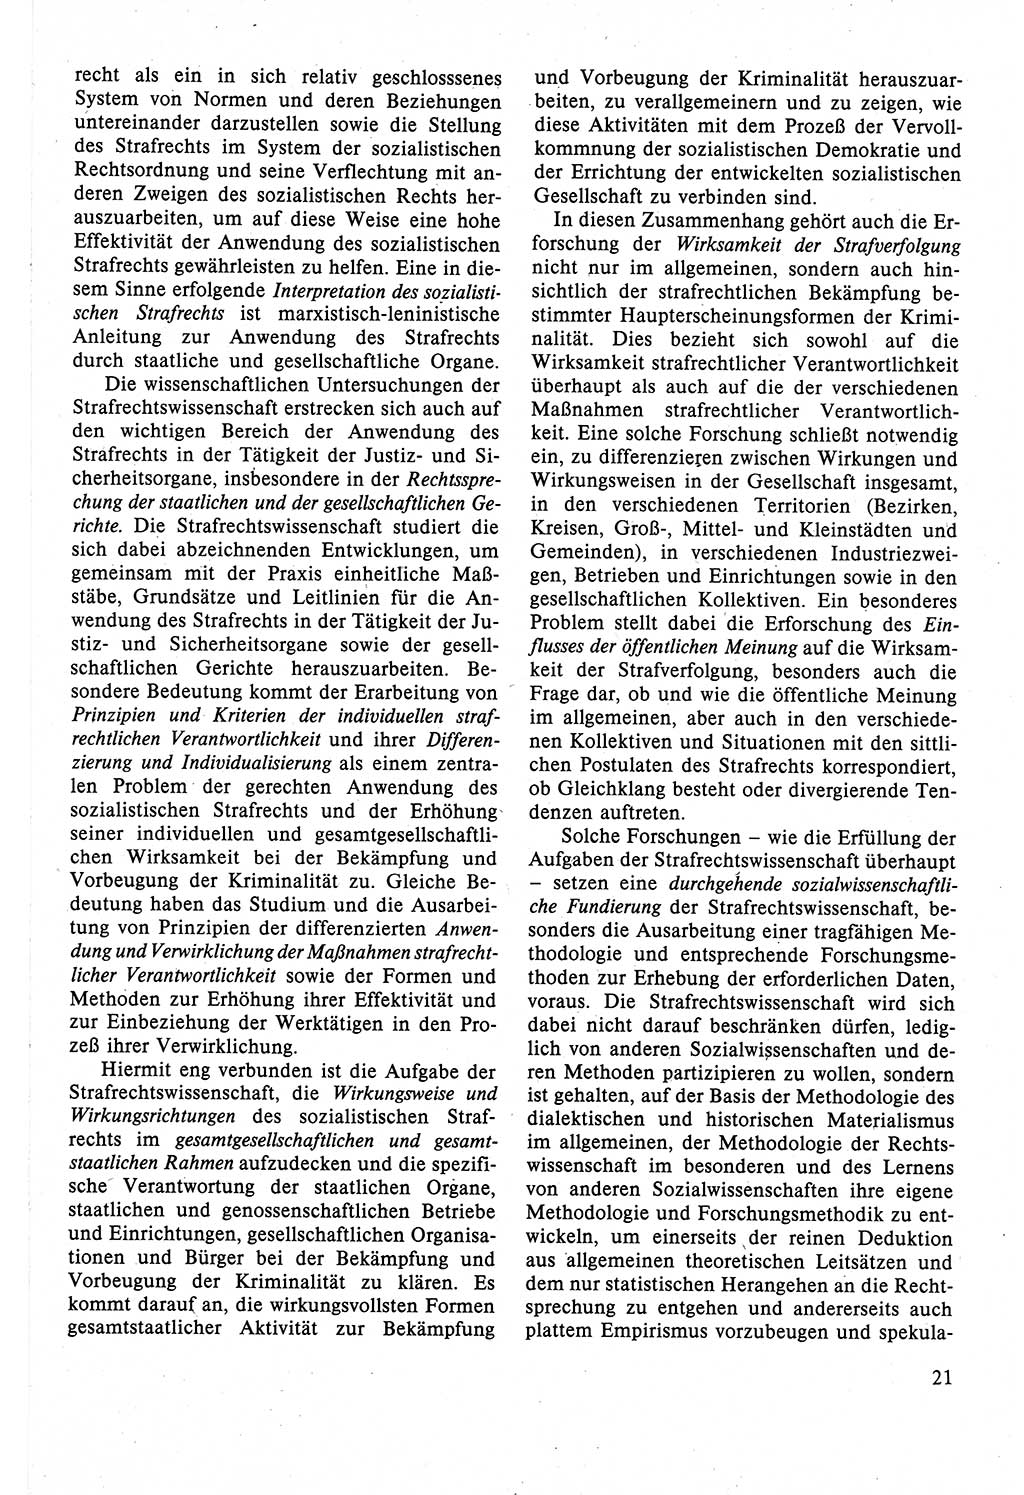 Strafrecht der DDR (Deutsche Demokratische Republik), Lehrbuch 1988, Seite 21 (Strafr. DDR Lb. 1988, S. 21)